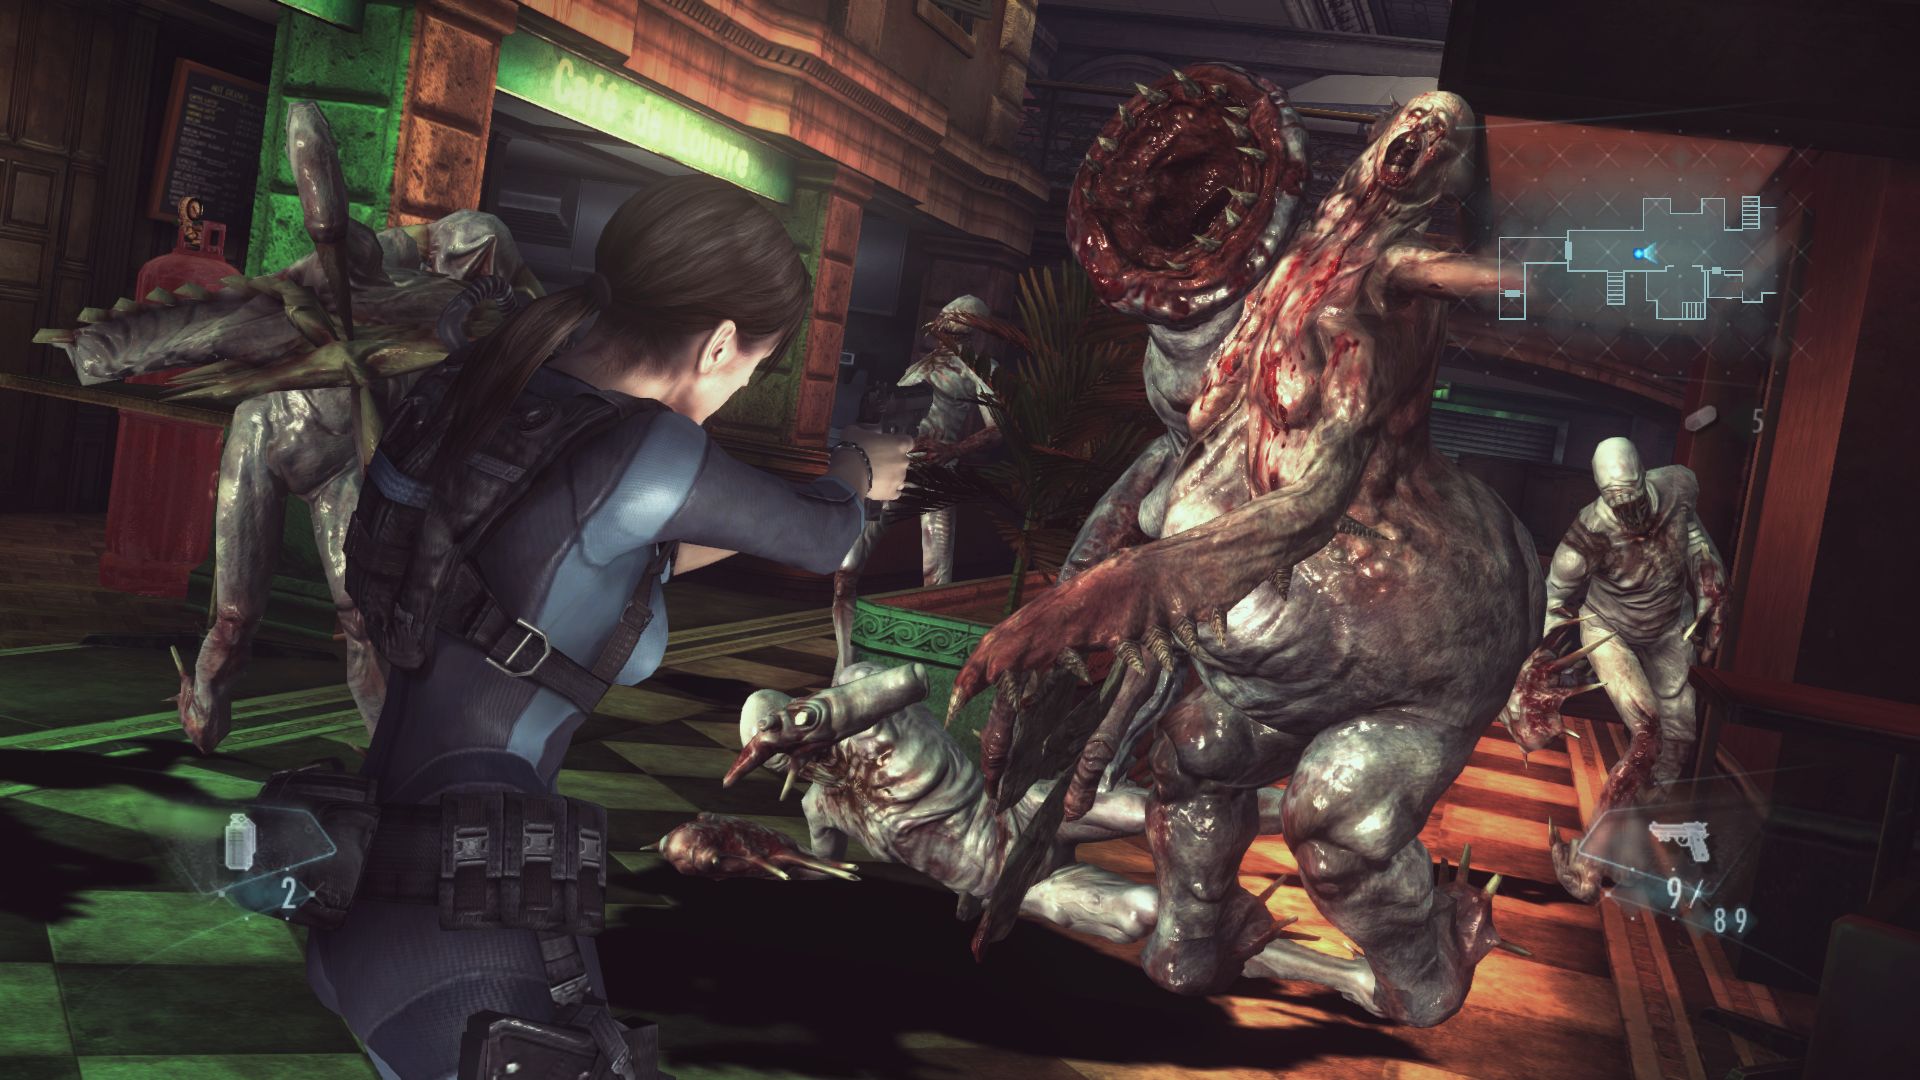 Immagine pubblicata in relazione al seguente contenuto: Requisiti di sistema e screenshot di Resident Evil: Revelations | Nome immagine: news19283_Resident-Evil-Revelations-PC-screenshot_2.jpg